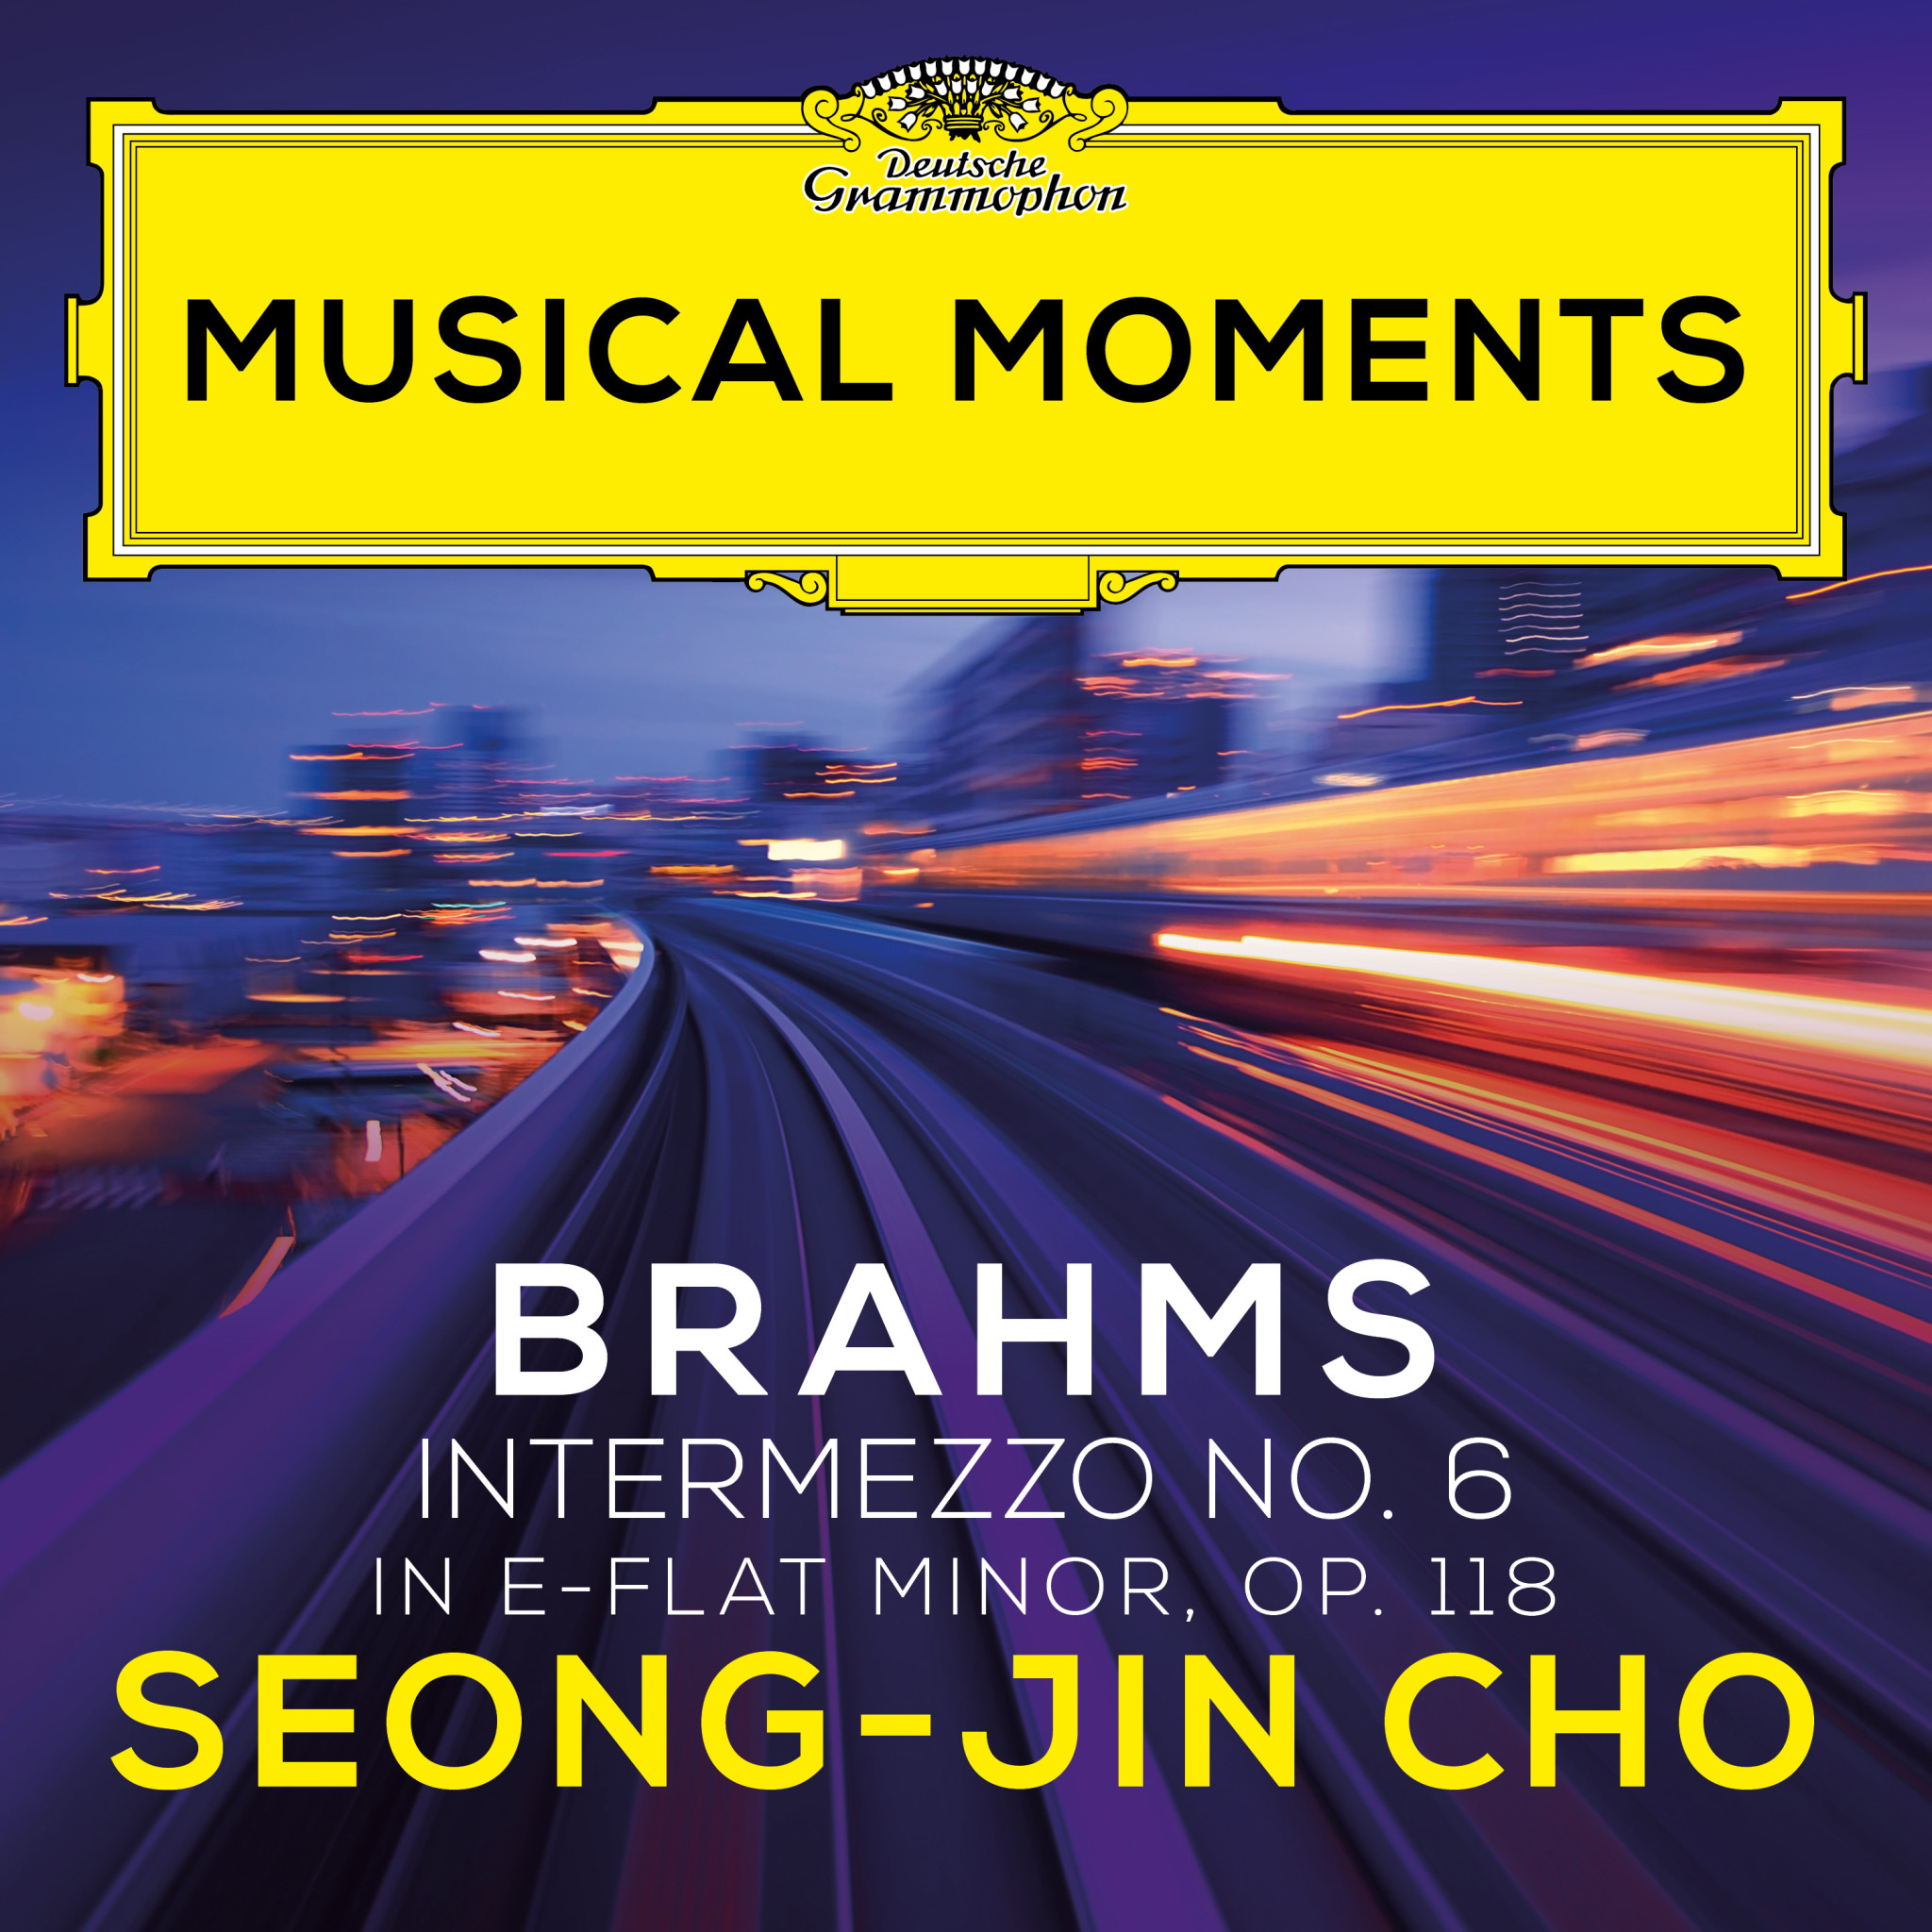 Seong-Jin Cho - Brahms: 6 Pieces for Piano, Op. 118: VI. Intermezzo in E Flat Minor. Andante, largo e mesto - Musical Moments Cover